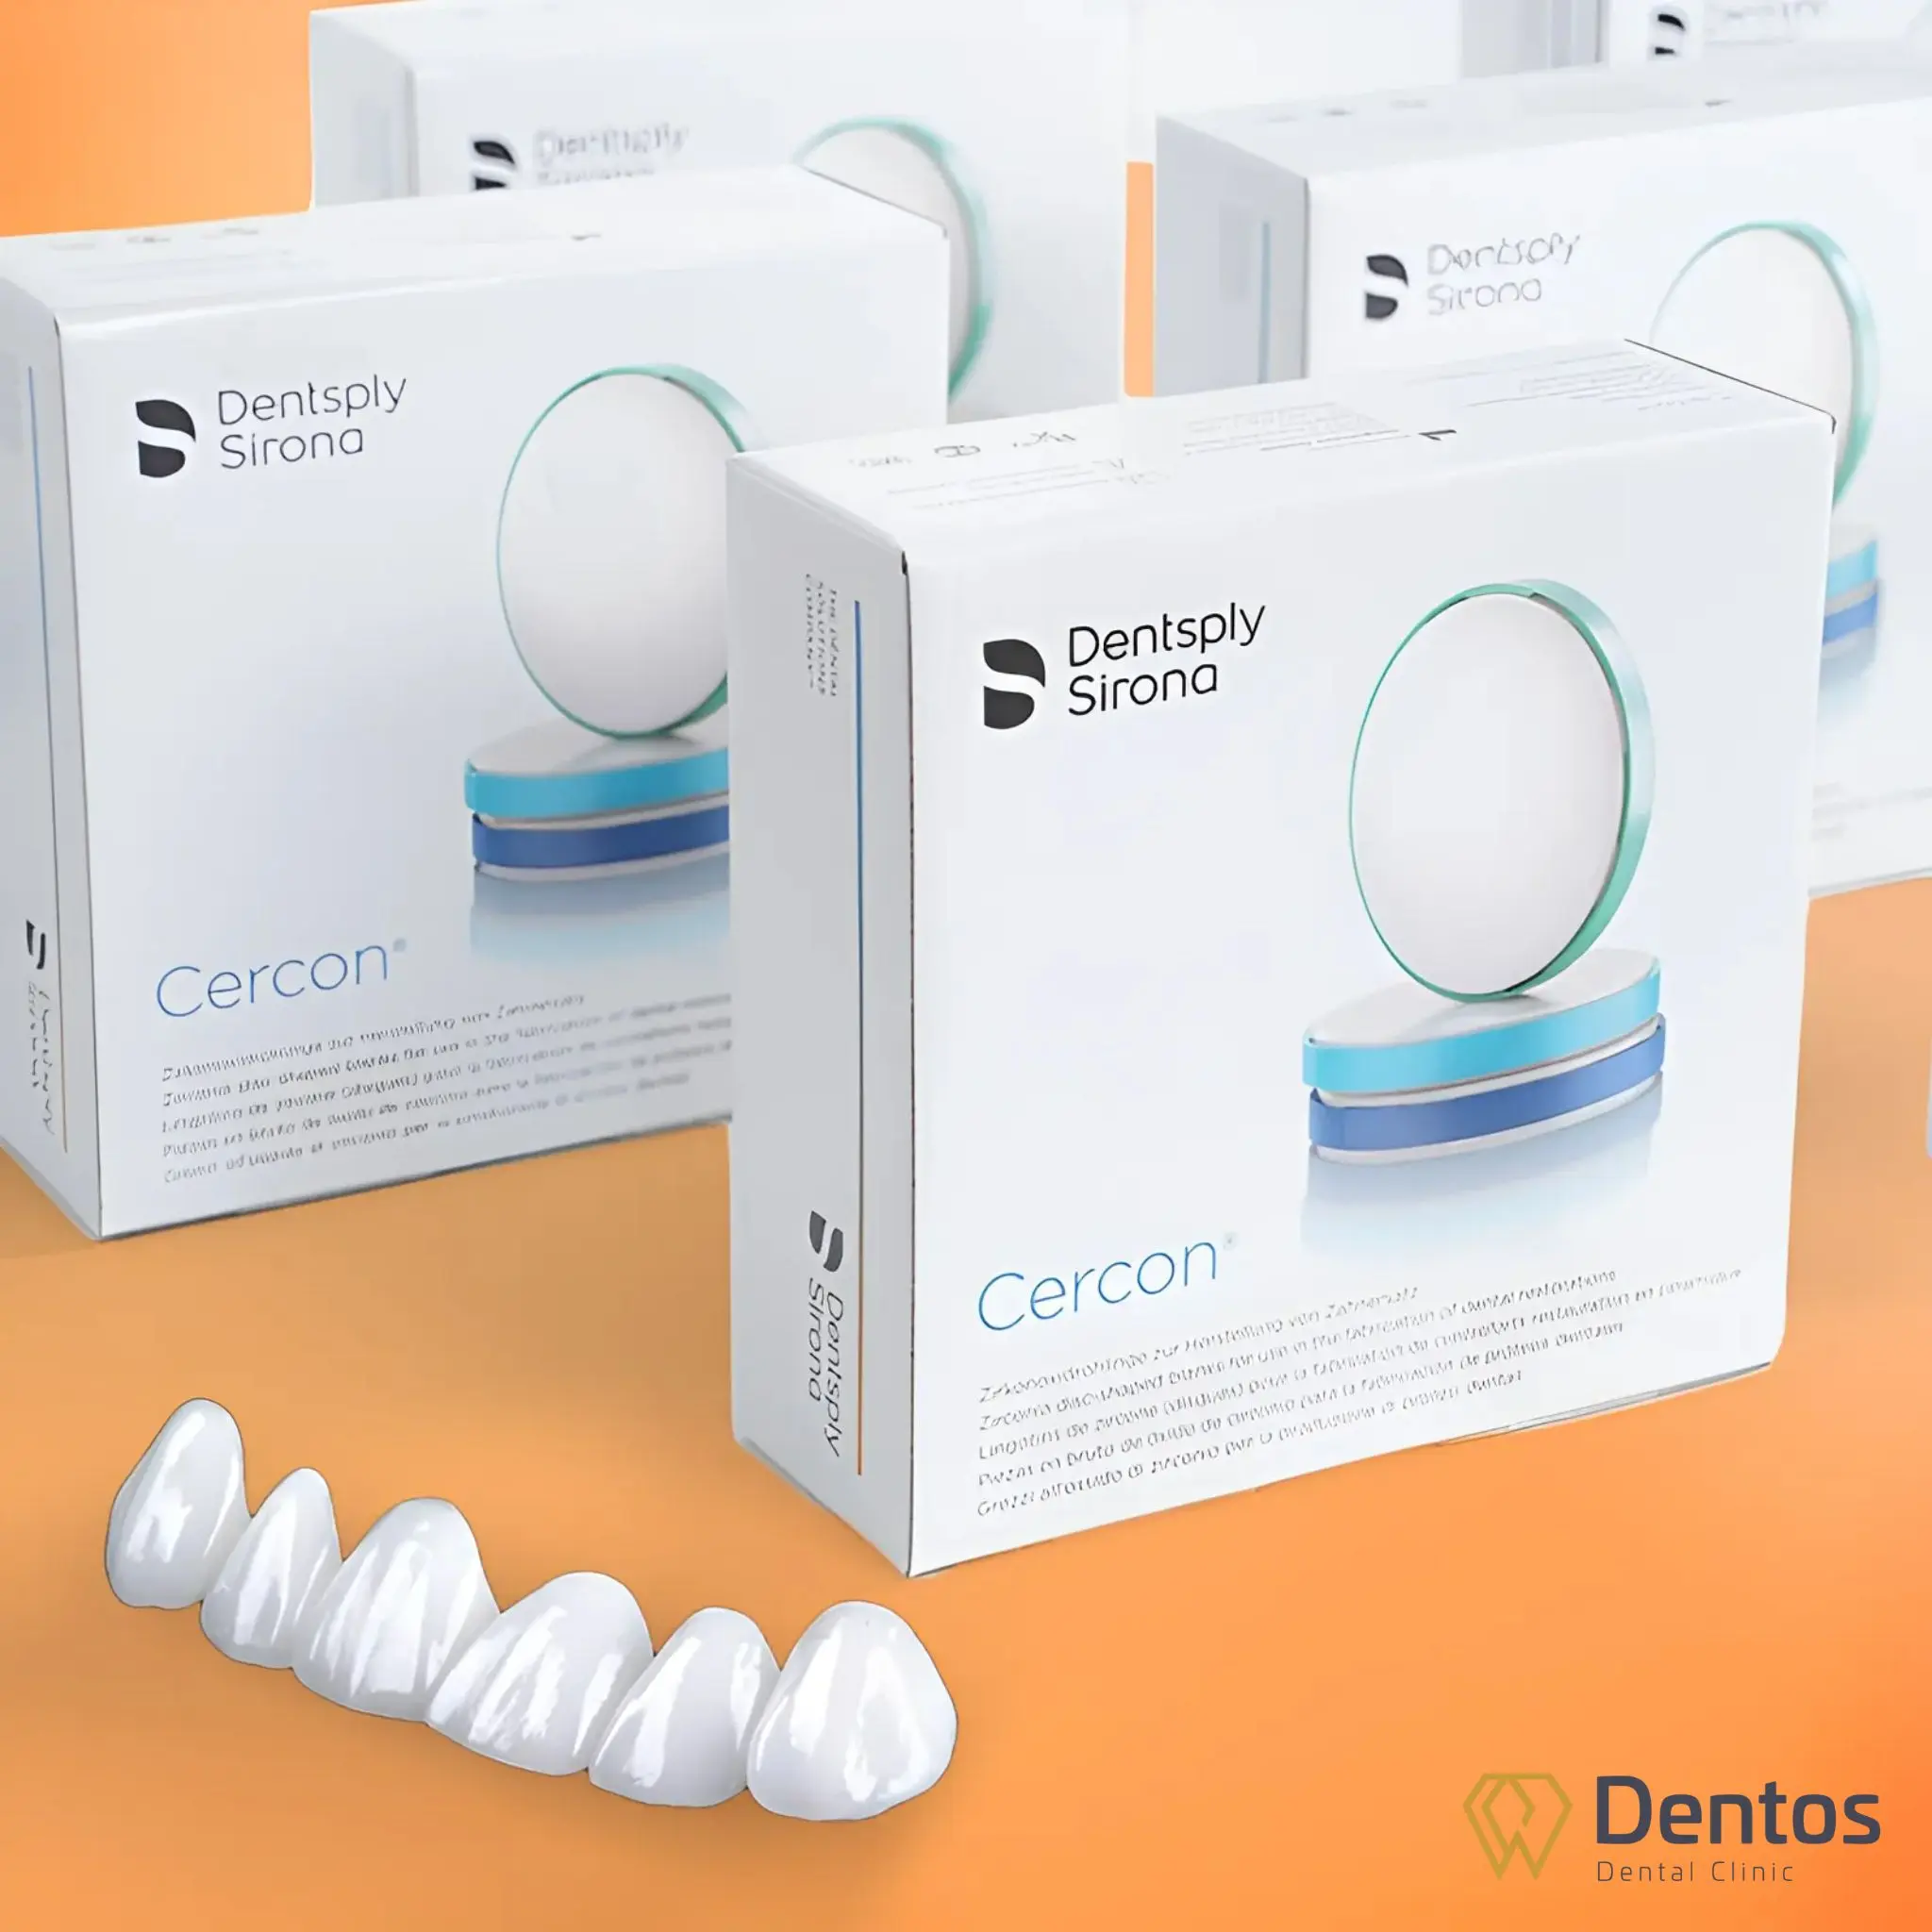 Răng sứ thẩm mỹ Cercon Ht là một sản phẩm ưu việt từ công nghệ của Đức